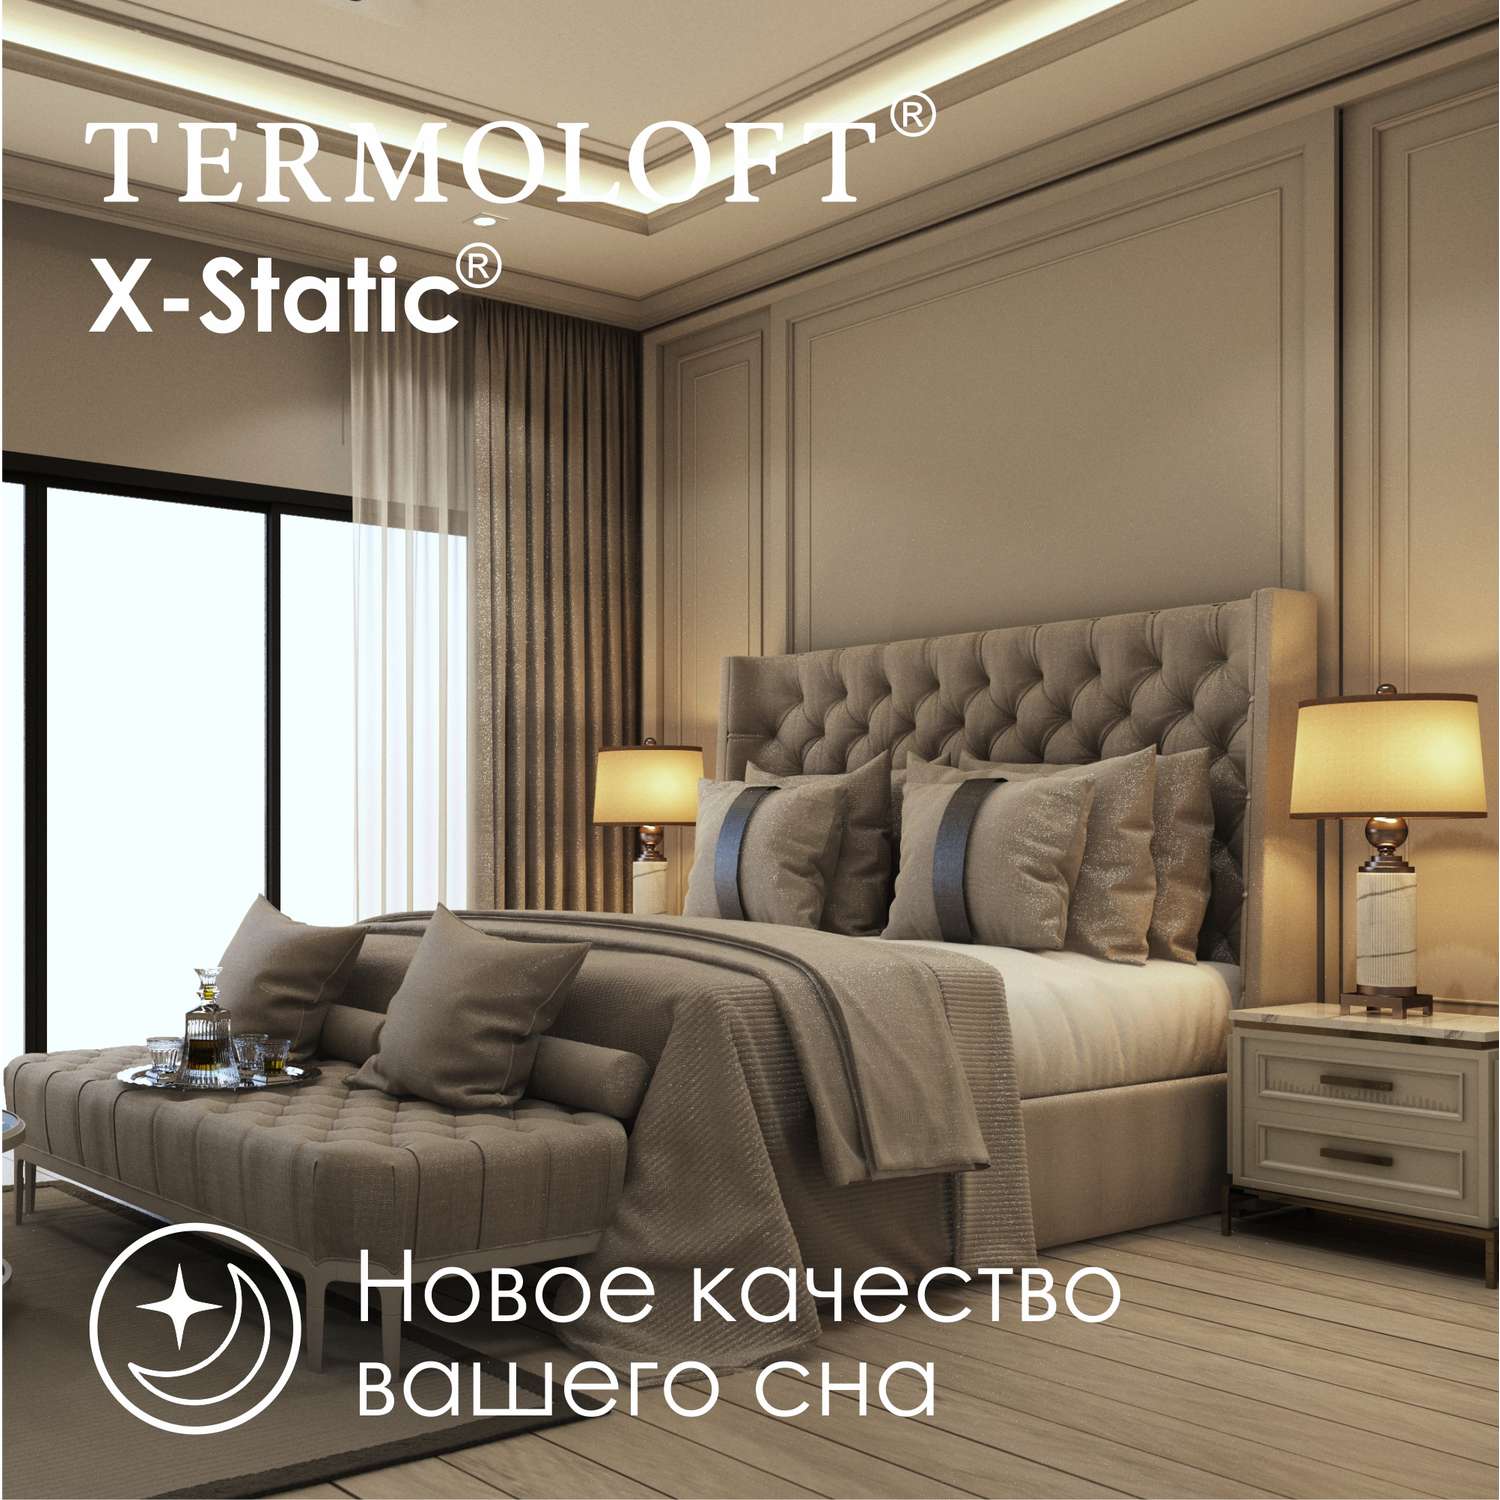 Наматрасник Termoloft X-Static с волокнами серебра 160х200 - фото 4